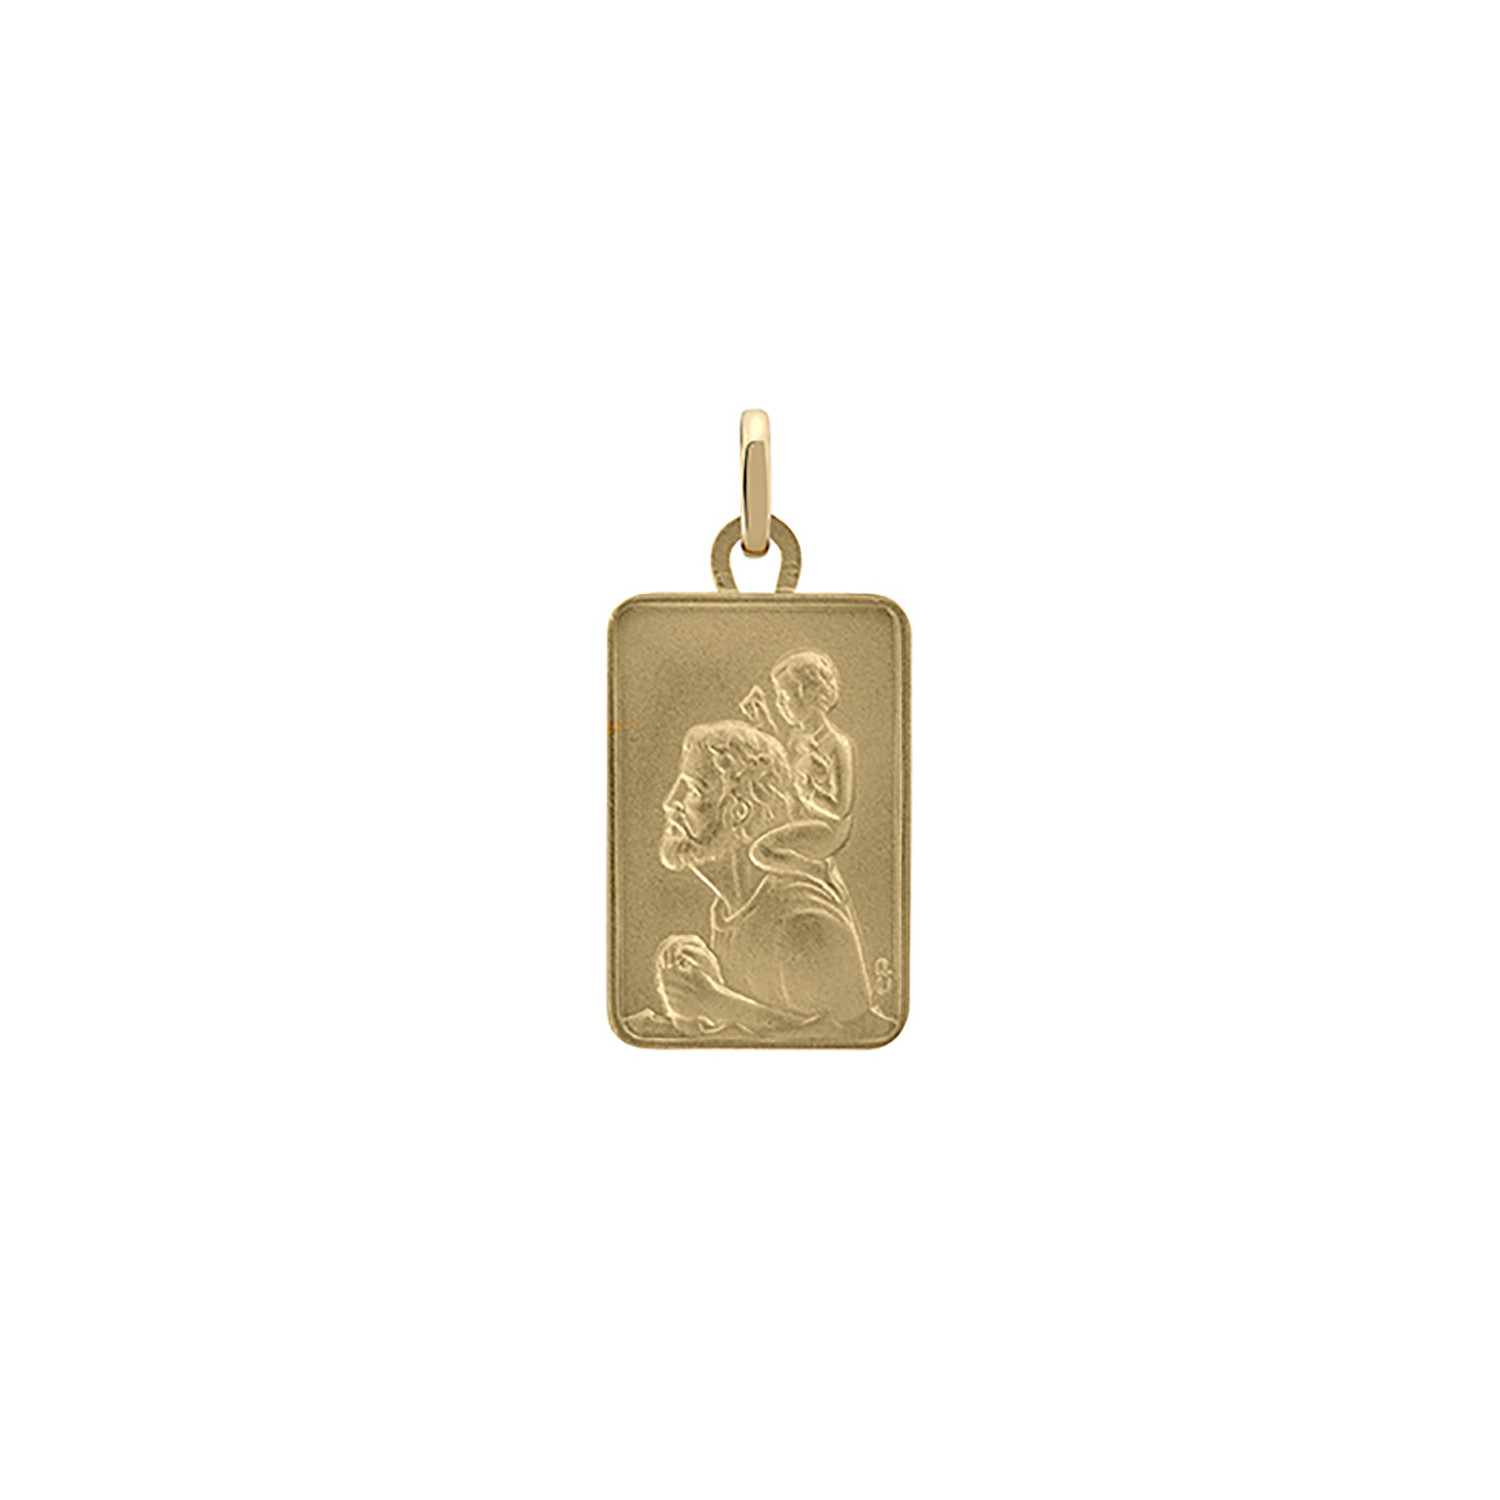 Médaille Saint Christophe or jaune 18 carats